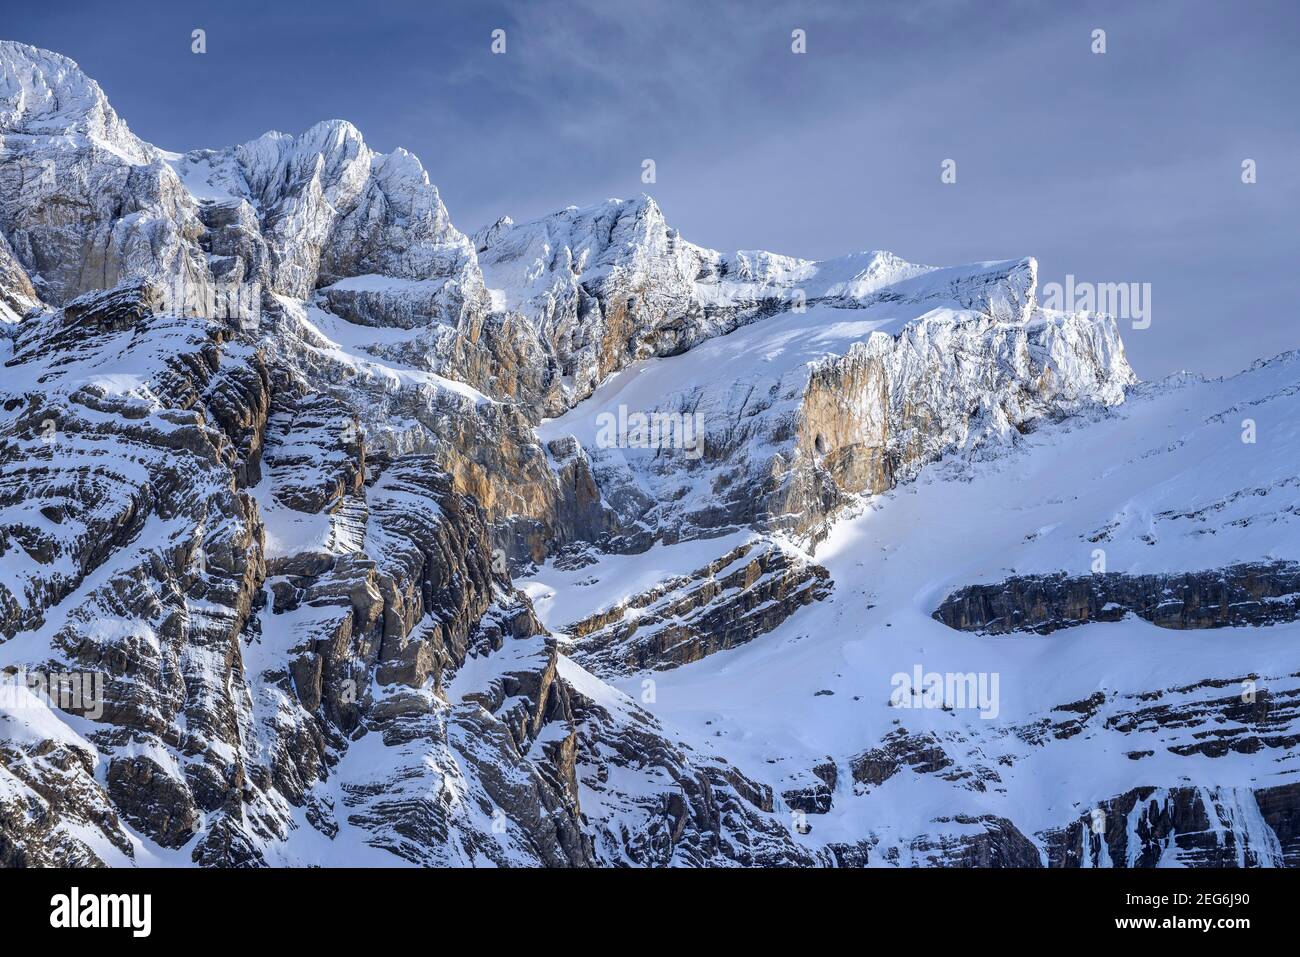 Vista invernale del Cirque de Gavarnie (Midi-Pirenei, Pirenei, Francia) ESP: Vistas invernales del Circo de Gavarnie (Pirineos, Francia) Foto Stock